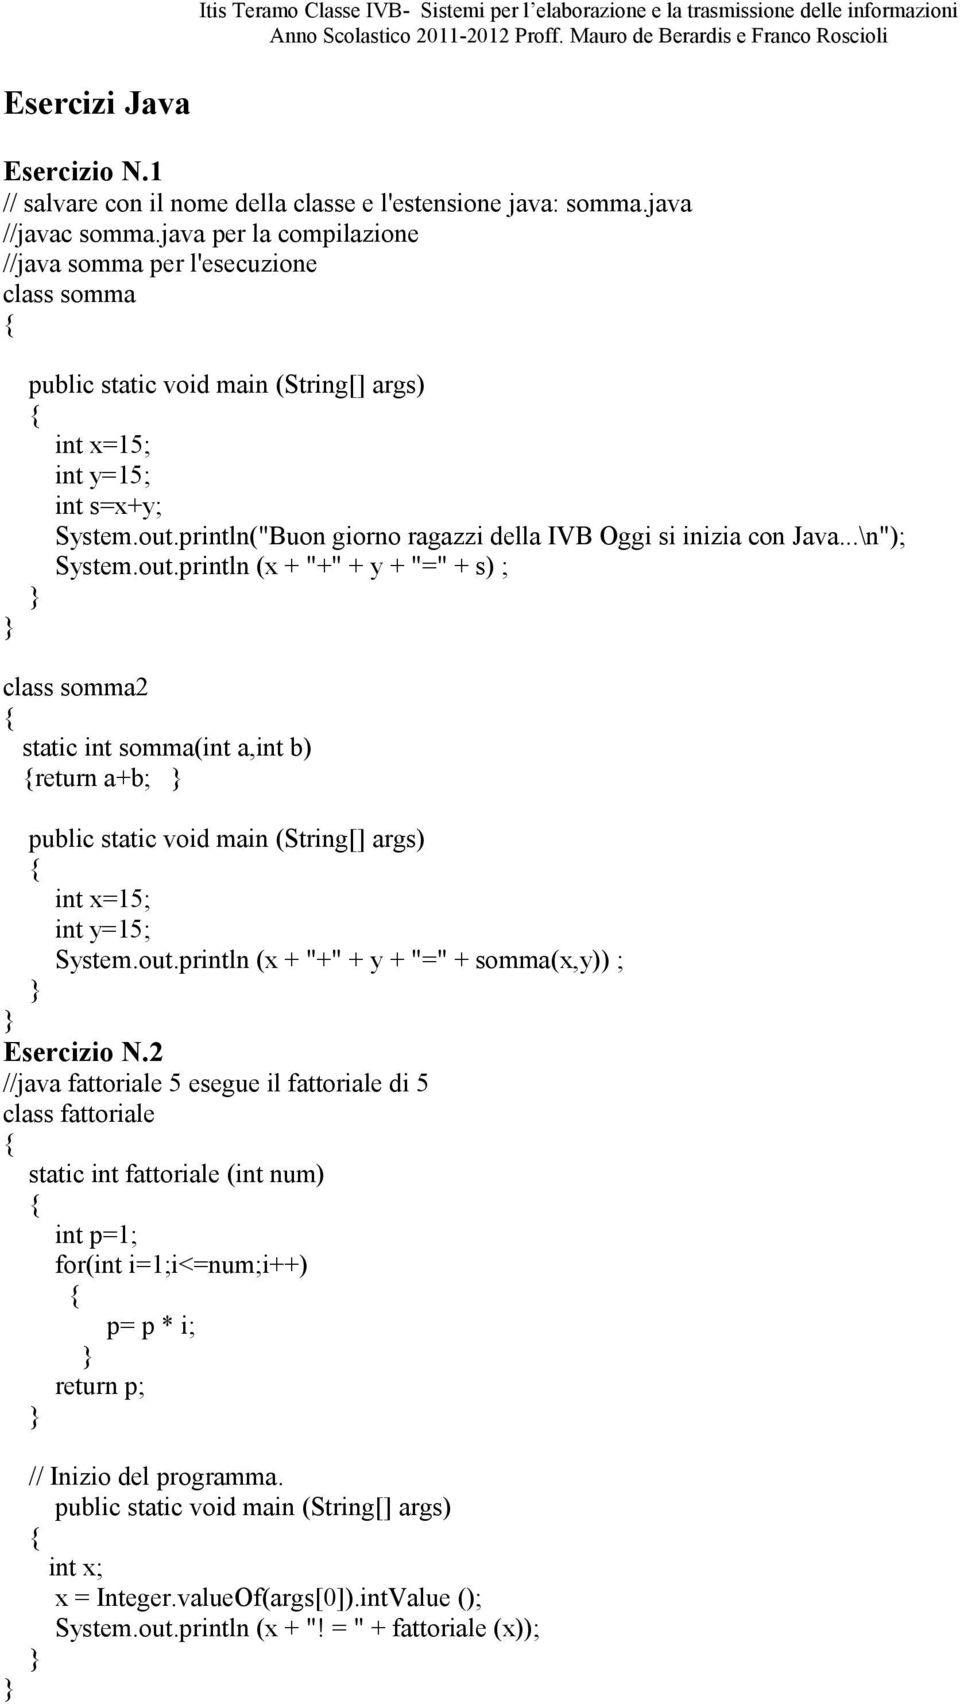 out.println (x + "+" + y + "=" + s) ; class somma2 static int somma(int a,int b) return a+b; int x=15; int y=15; System.out.println (x + "+" + y + "=" + somma(x,y)) ; Esercizio N.